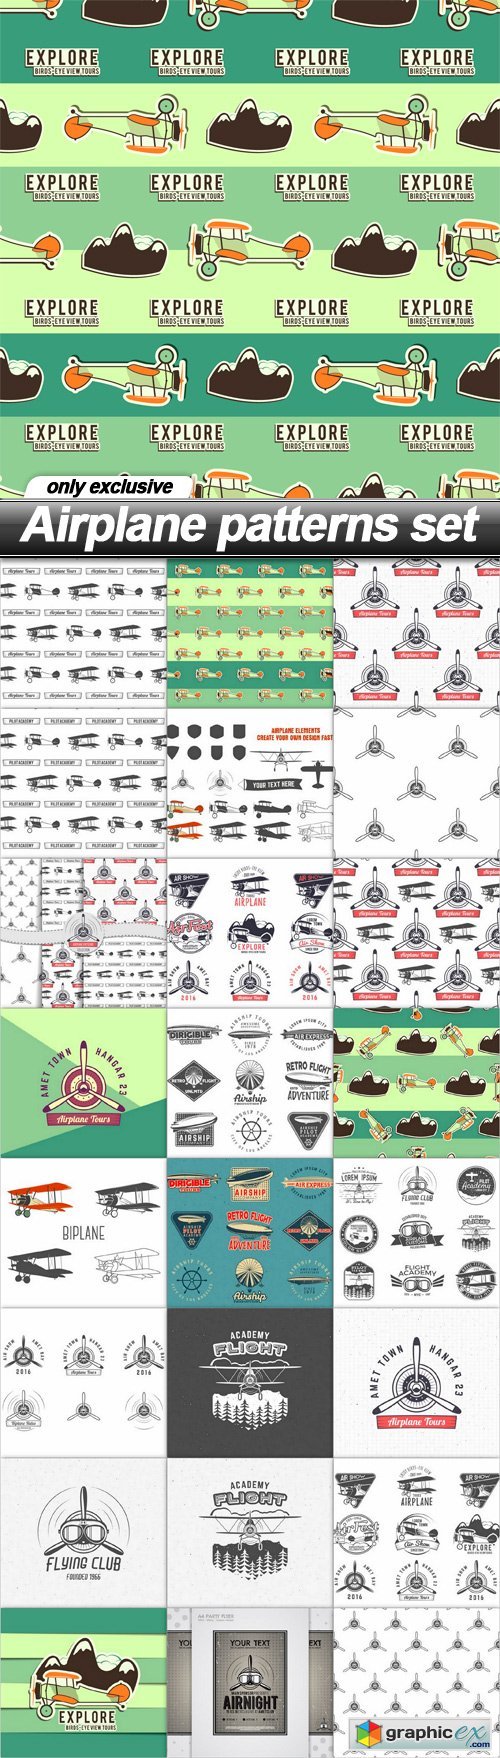 Airplane patterns set - 25 EPS